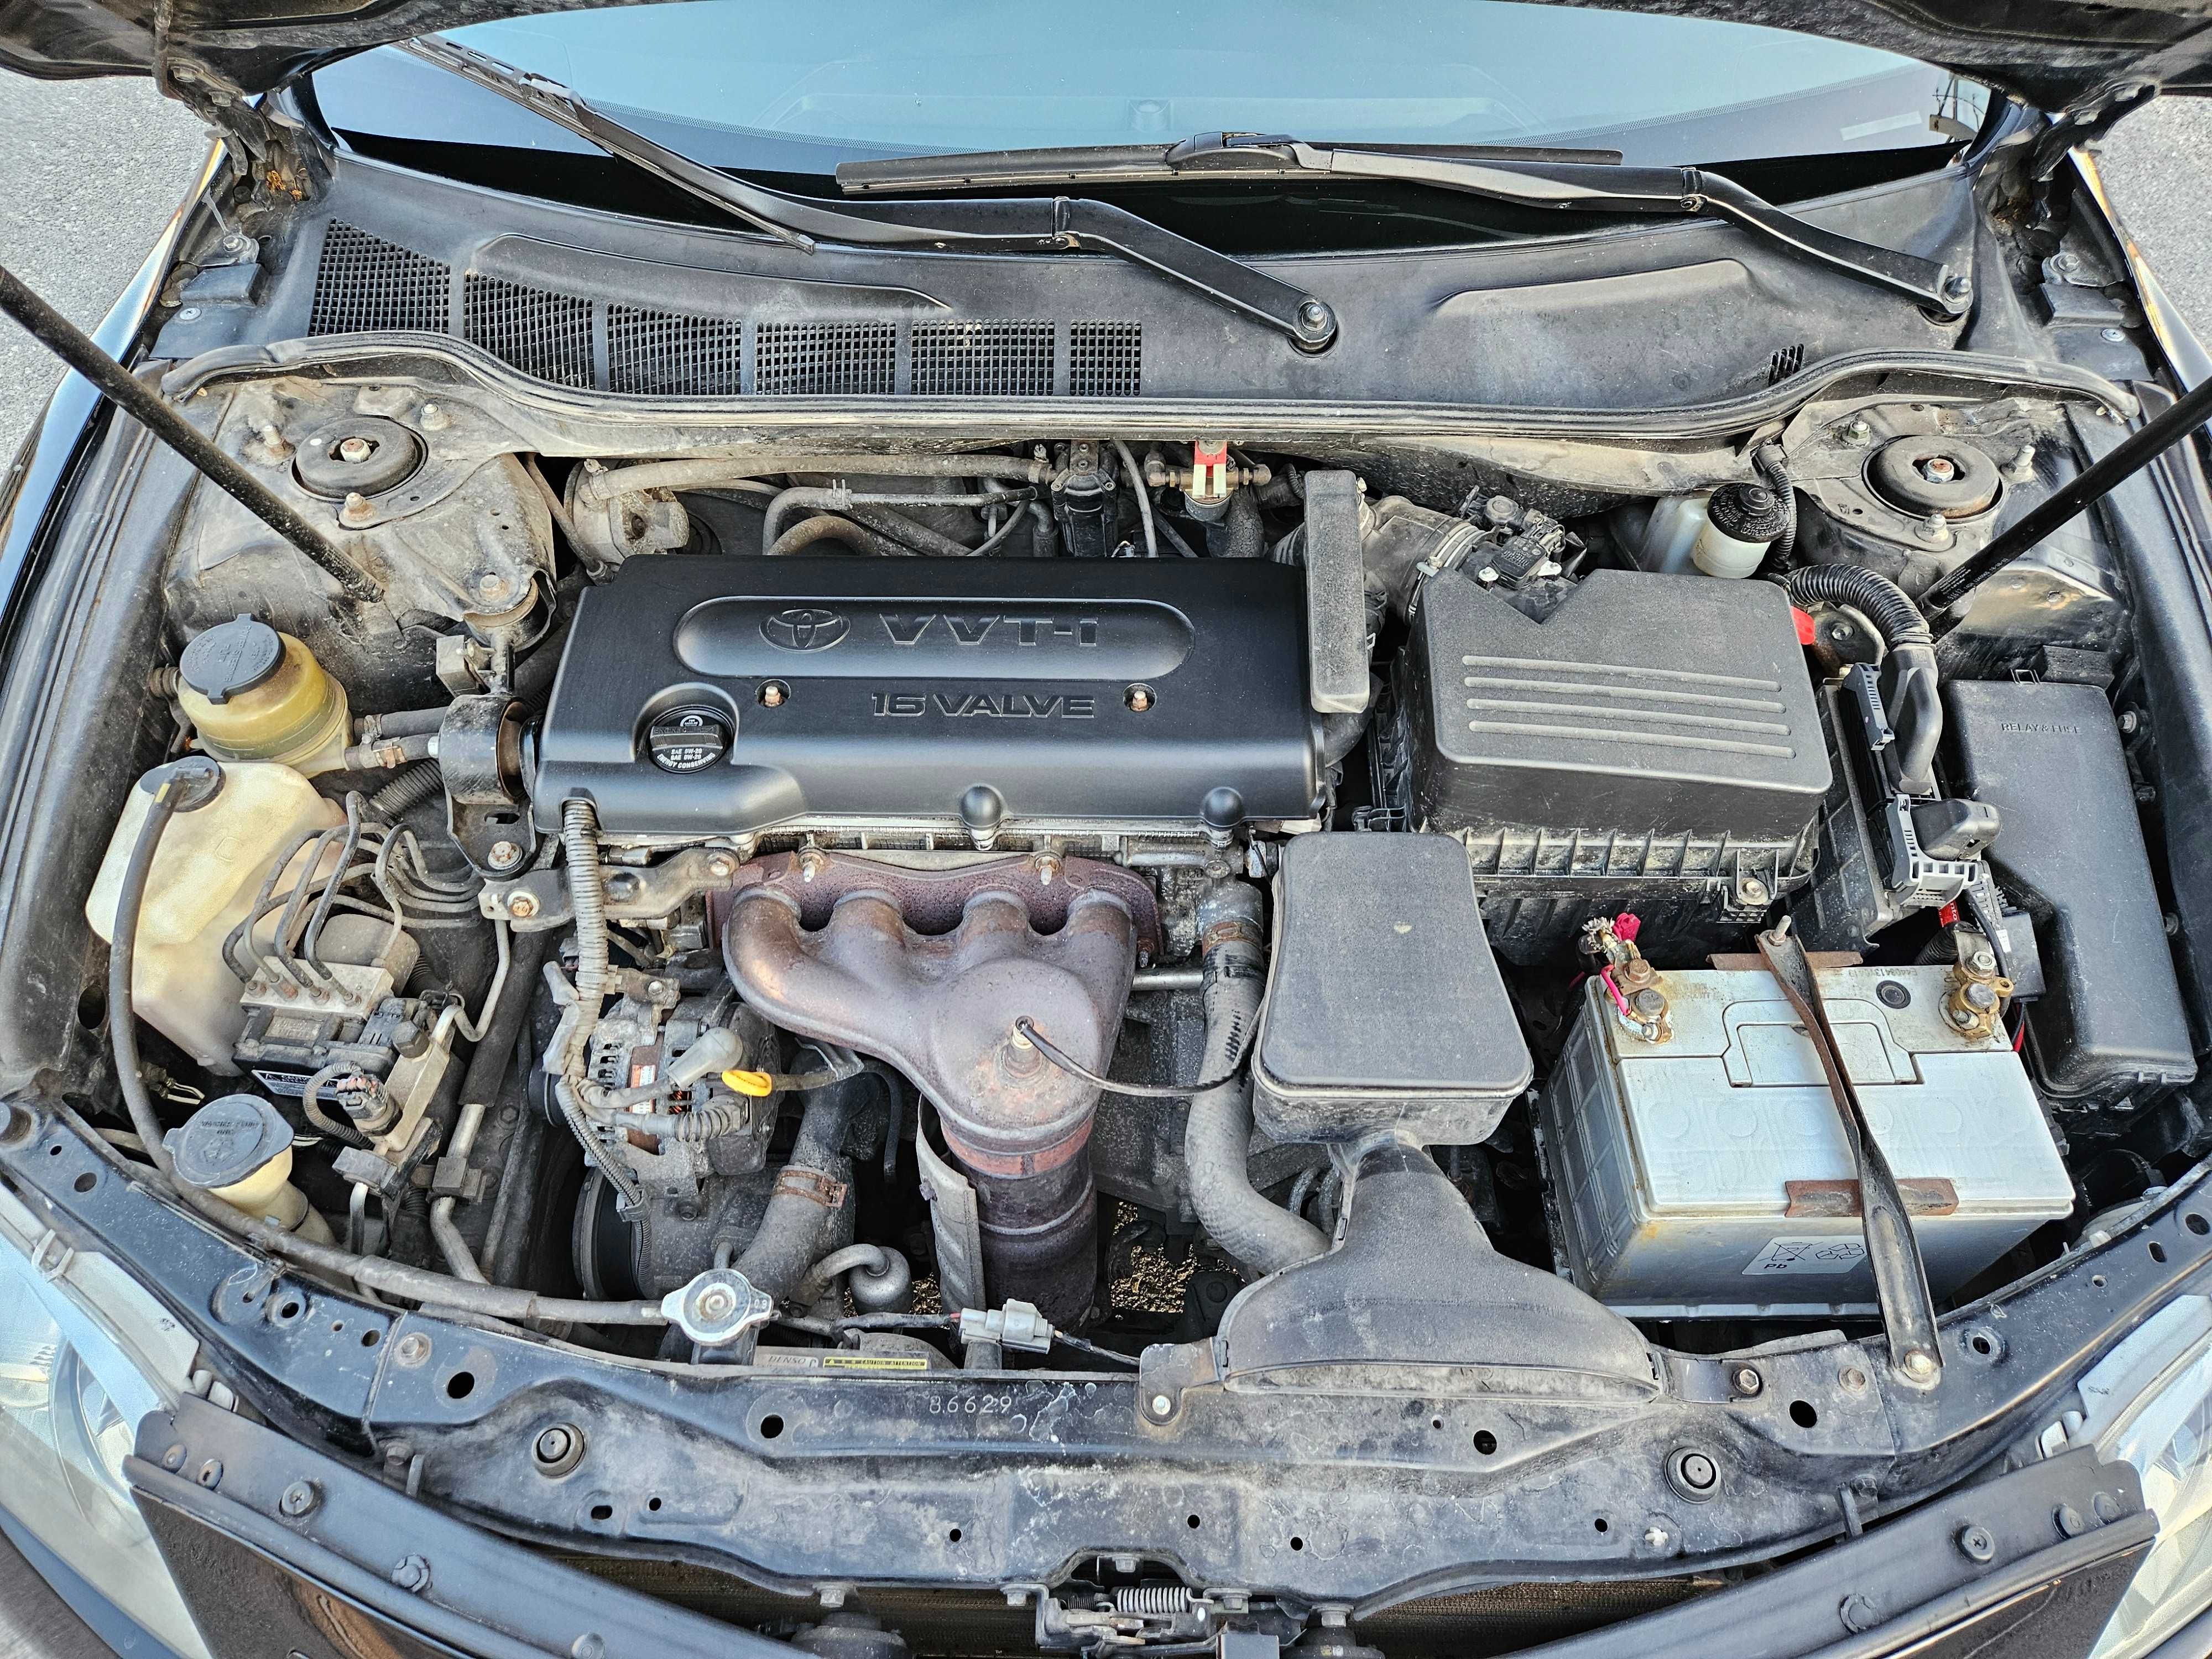 Toyota Camry 40 2.4i LPG в Родной краске! в Отличном состоянии!